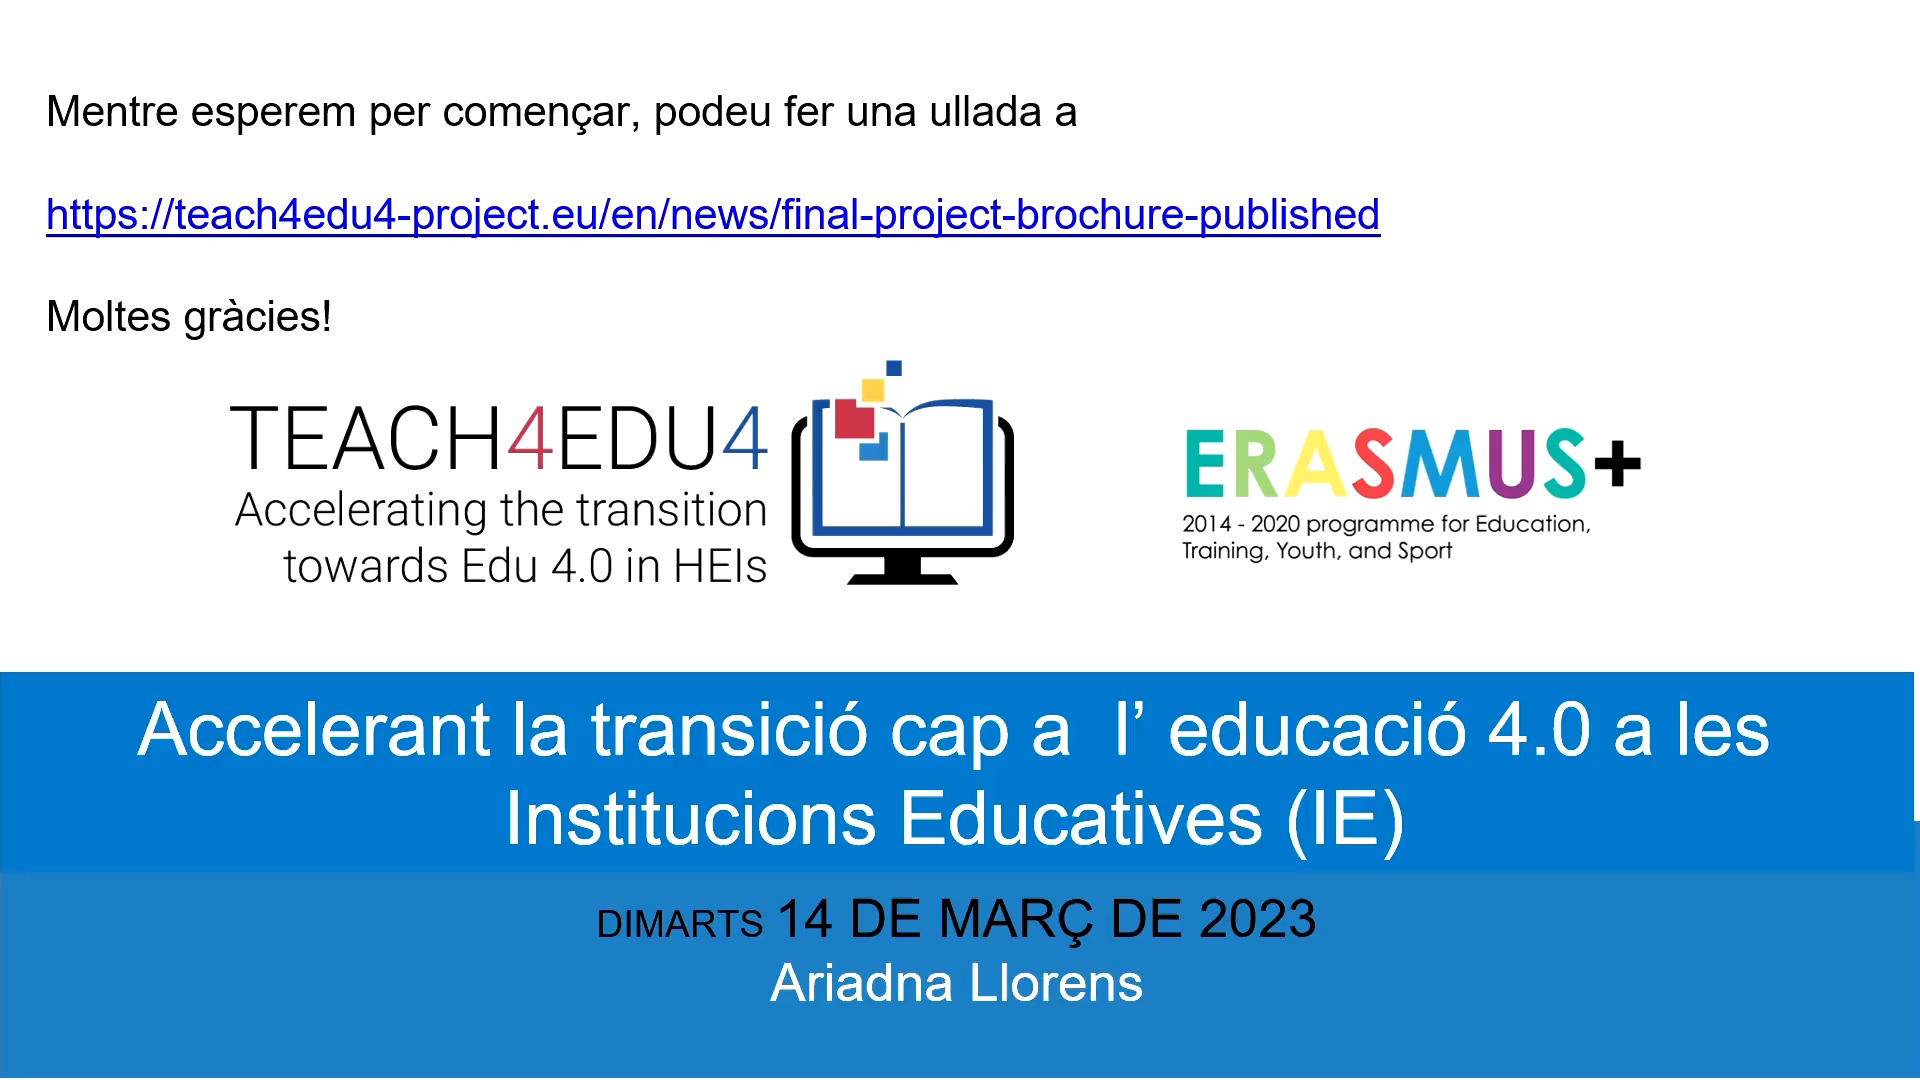 Accelerant la transició cap a l’educació 4.0 a les Institucions Educatives